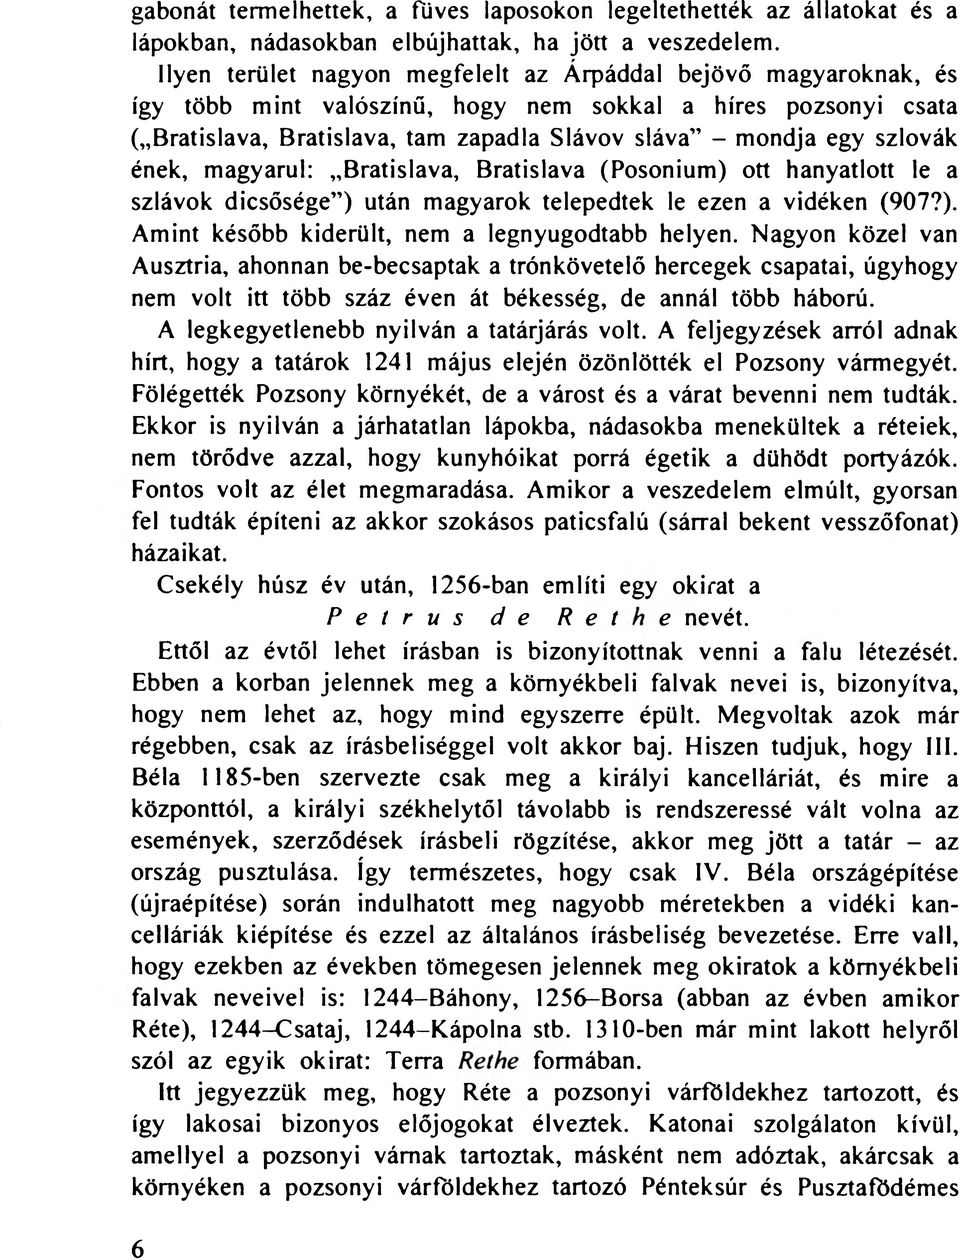 szlovák ének, magyarul: Bratislava, Bratislava (Posonium) ott hanyatlott le a szlávok dicsősége") után magyarok telepedtek le ezen a vidéken (907?). Amint később kiderült, nem a legnyugodtabb helyen.